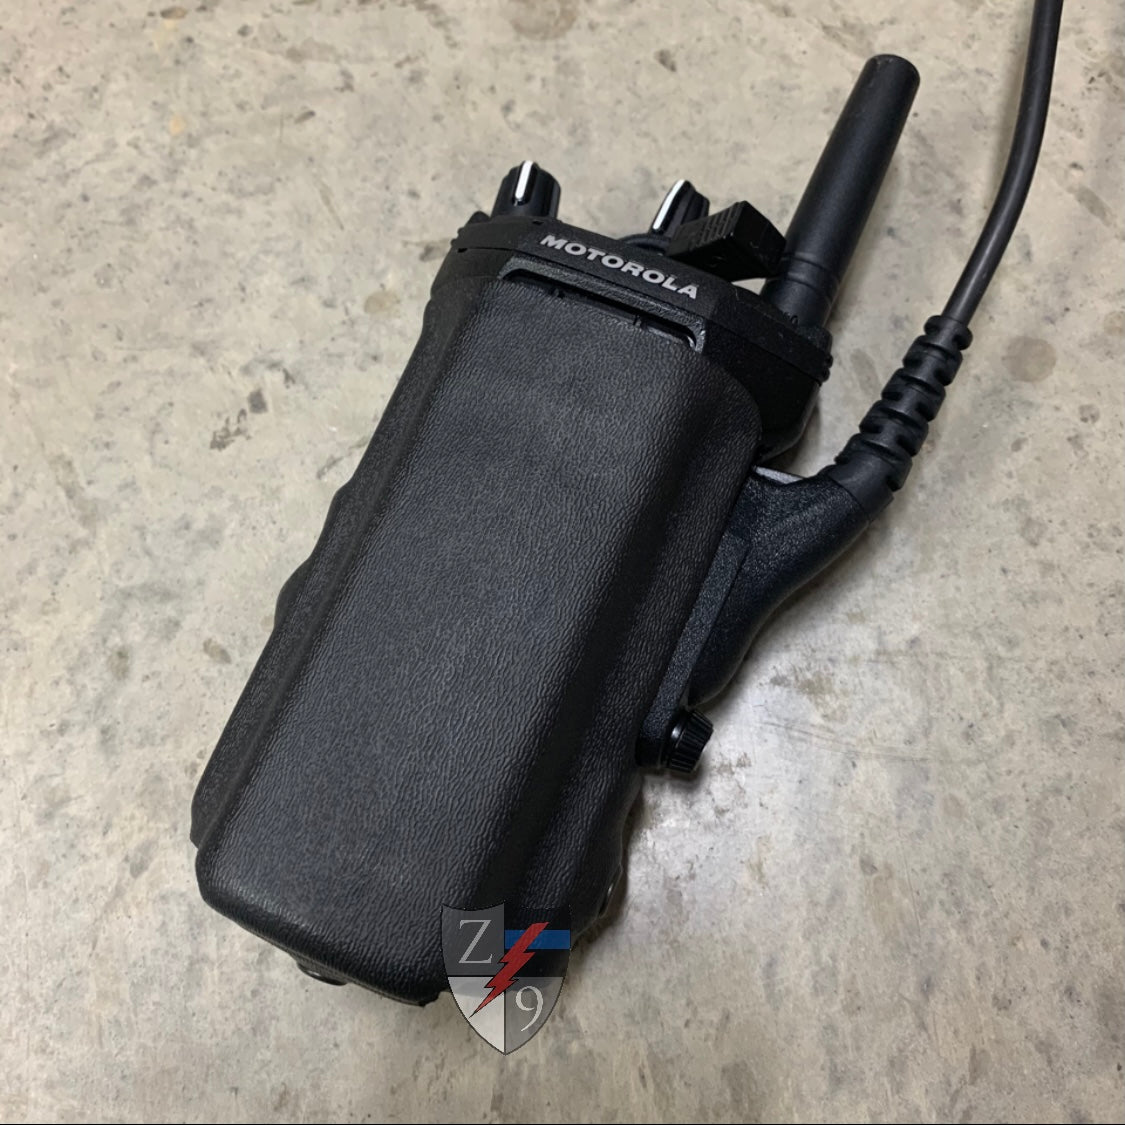 Portable Radio Case - MOTOROLA APX SERIES – Zero9 Holsters